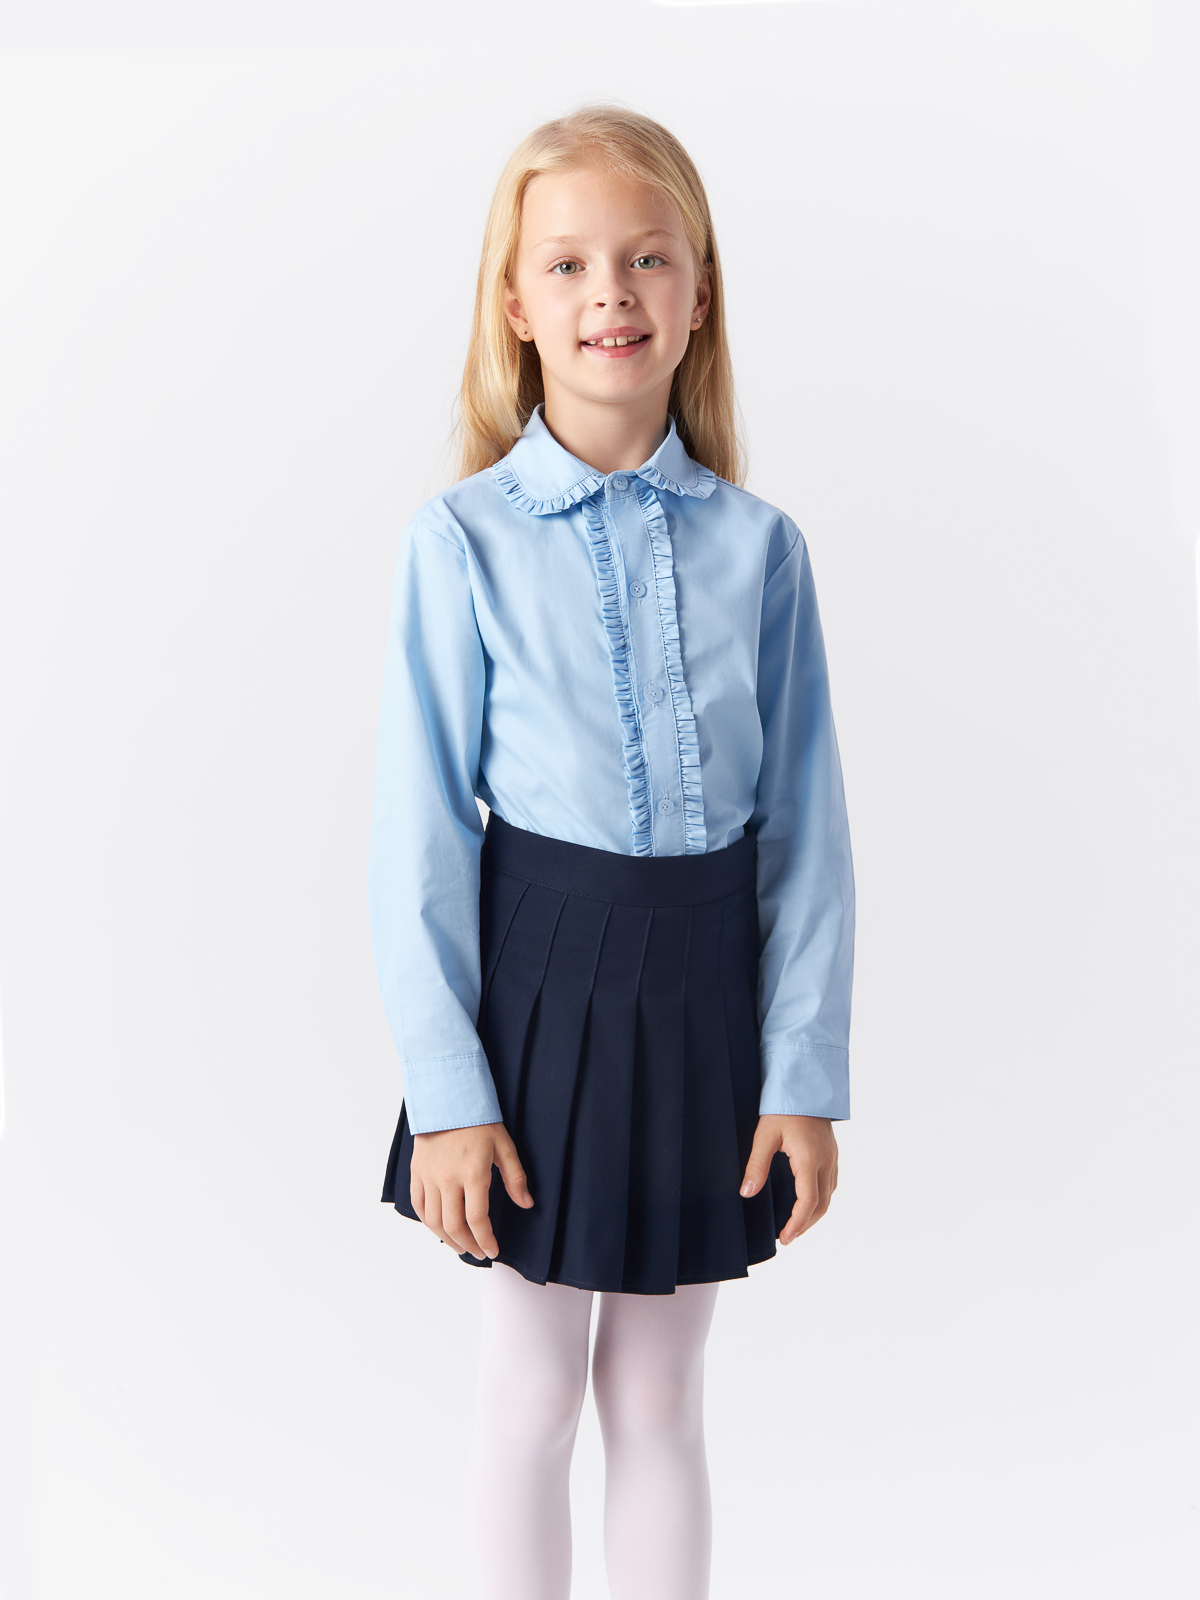 Блузка Yiwu Xflot Supply Chain детская, BS-2blue, размер 150 см блузка классическая с принтом сердечко белая button blue 128